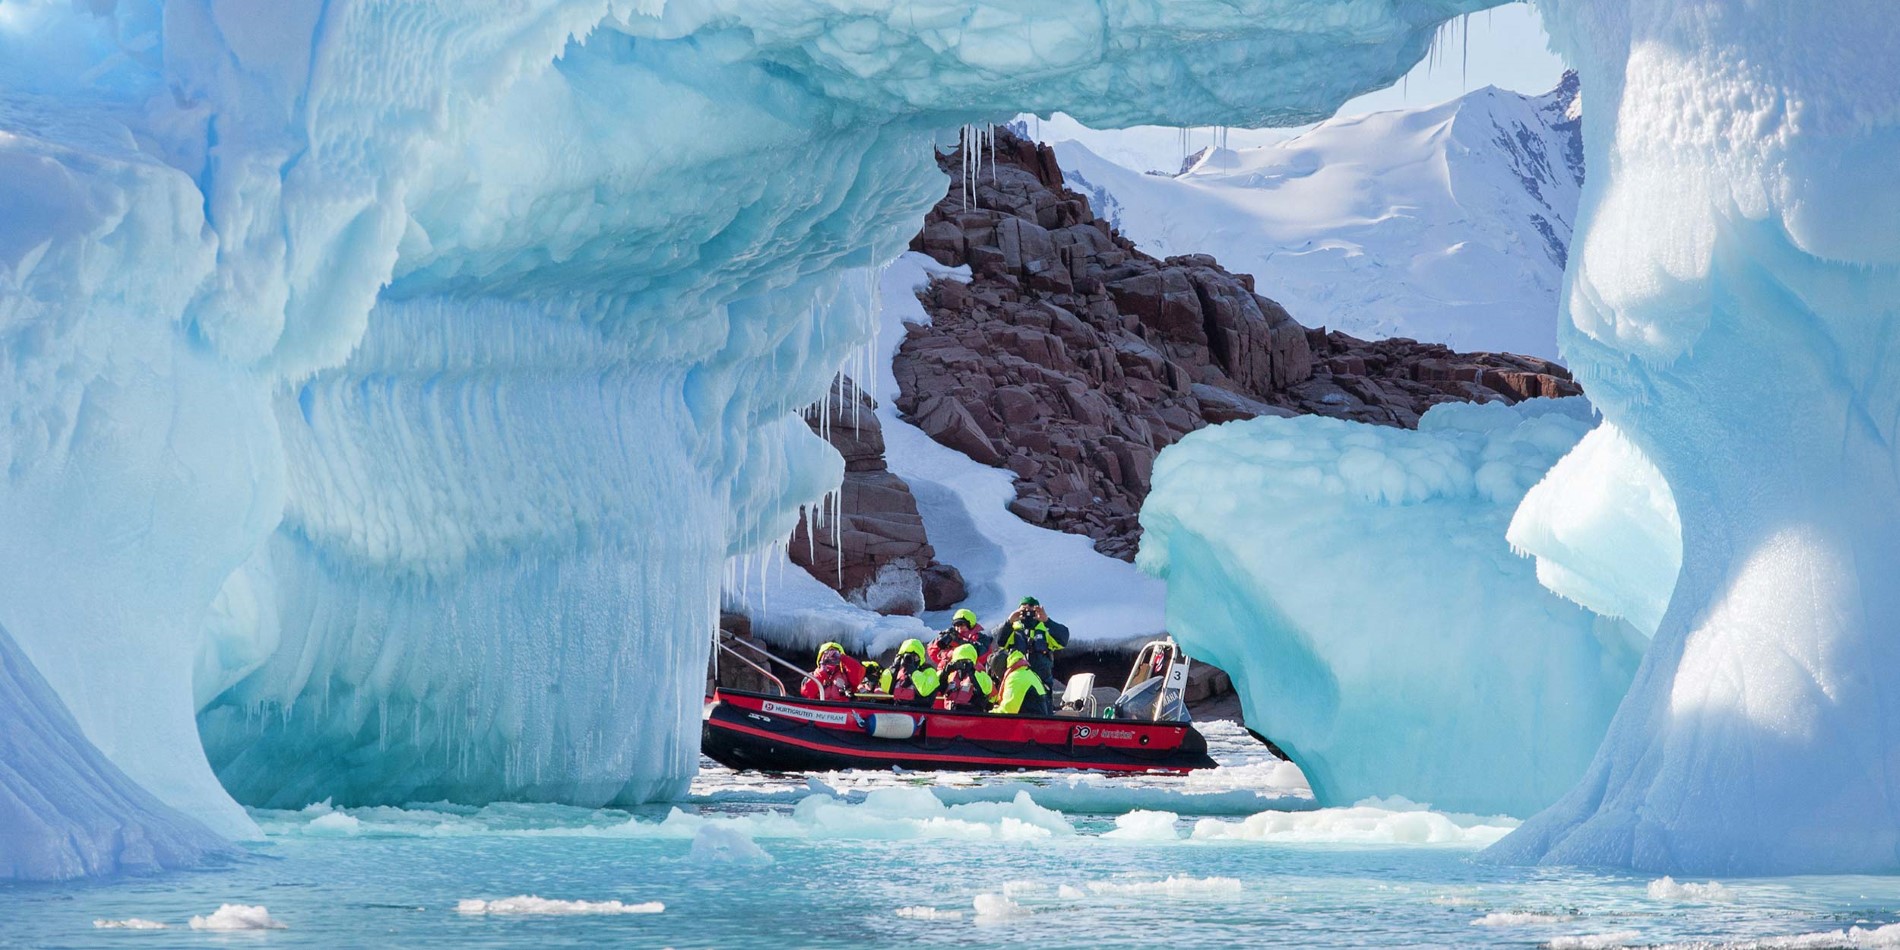 Gruppe von Touristen in kleinen Boot unter spektakulären Eisformationen